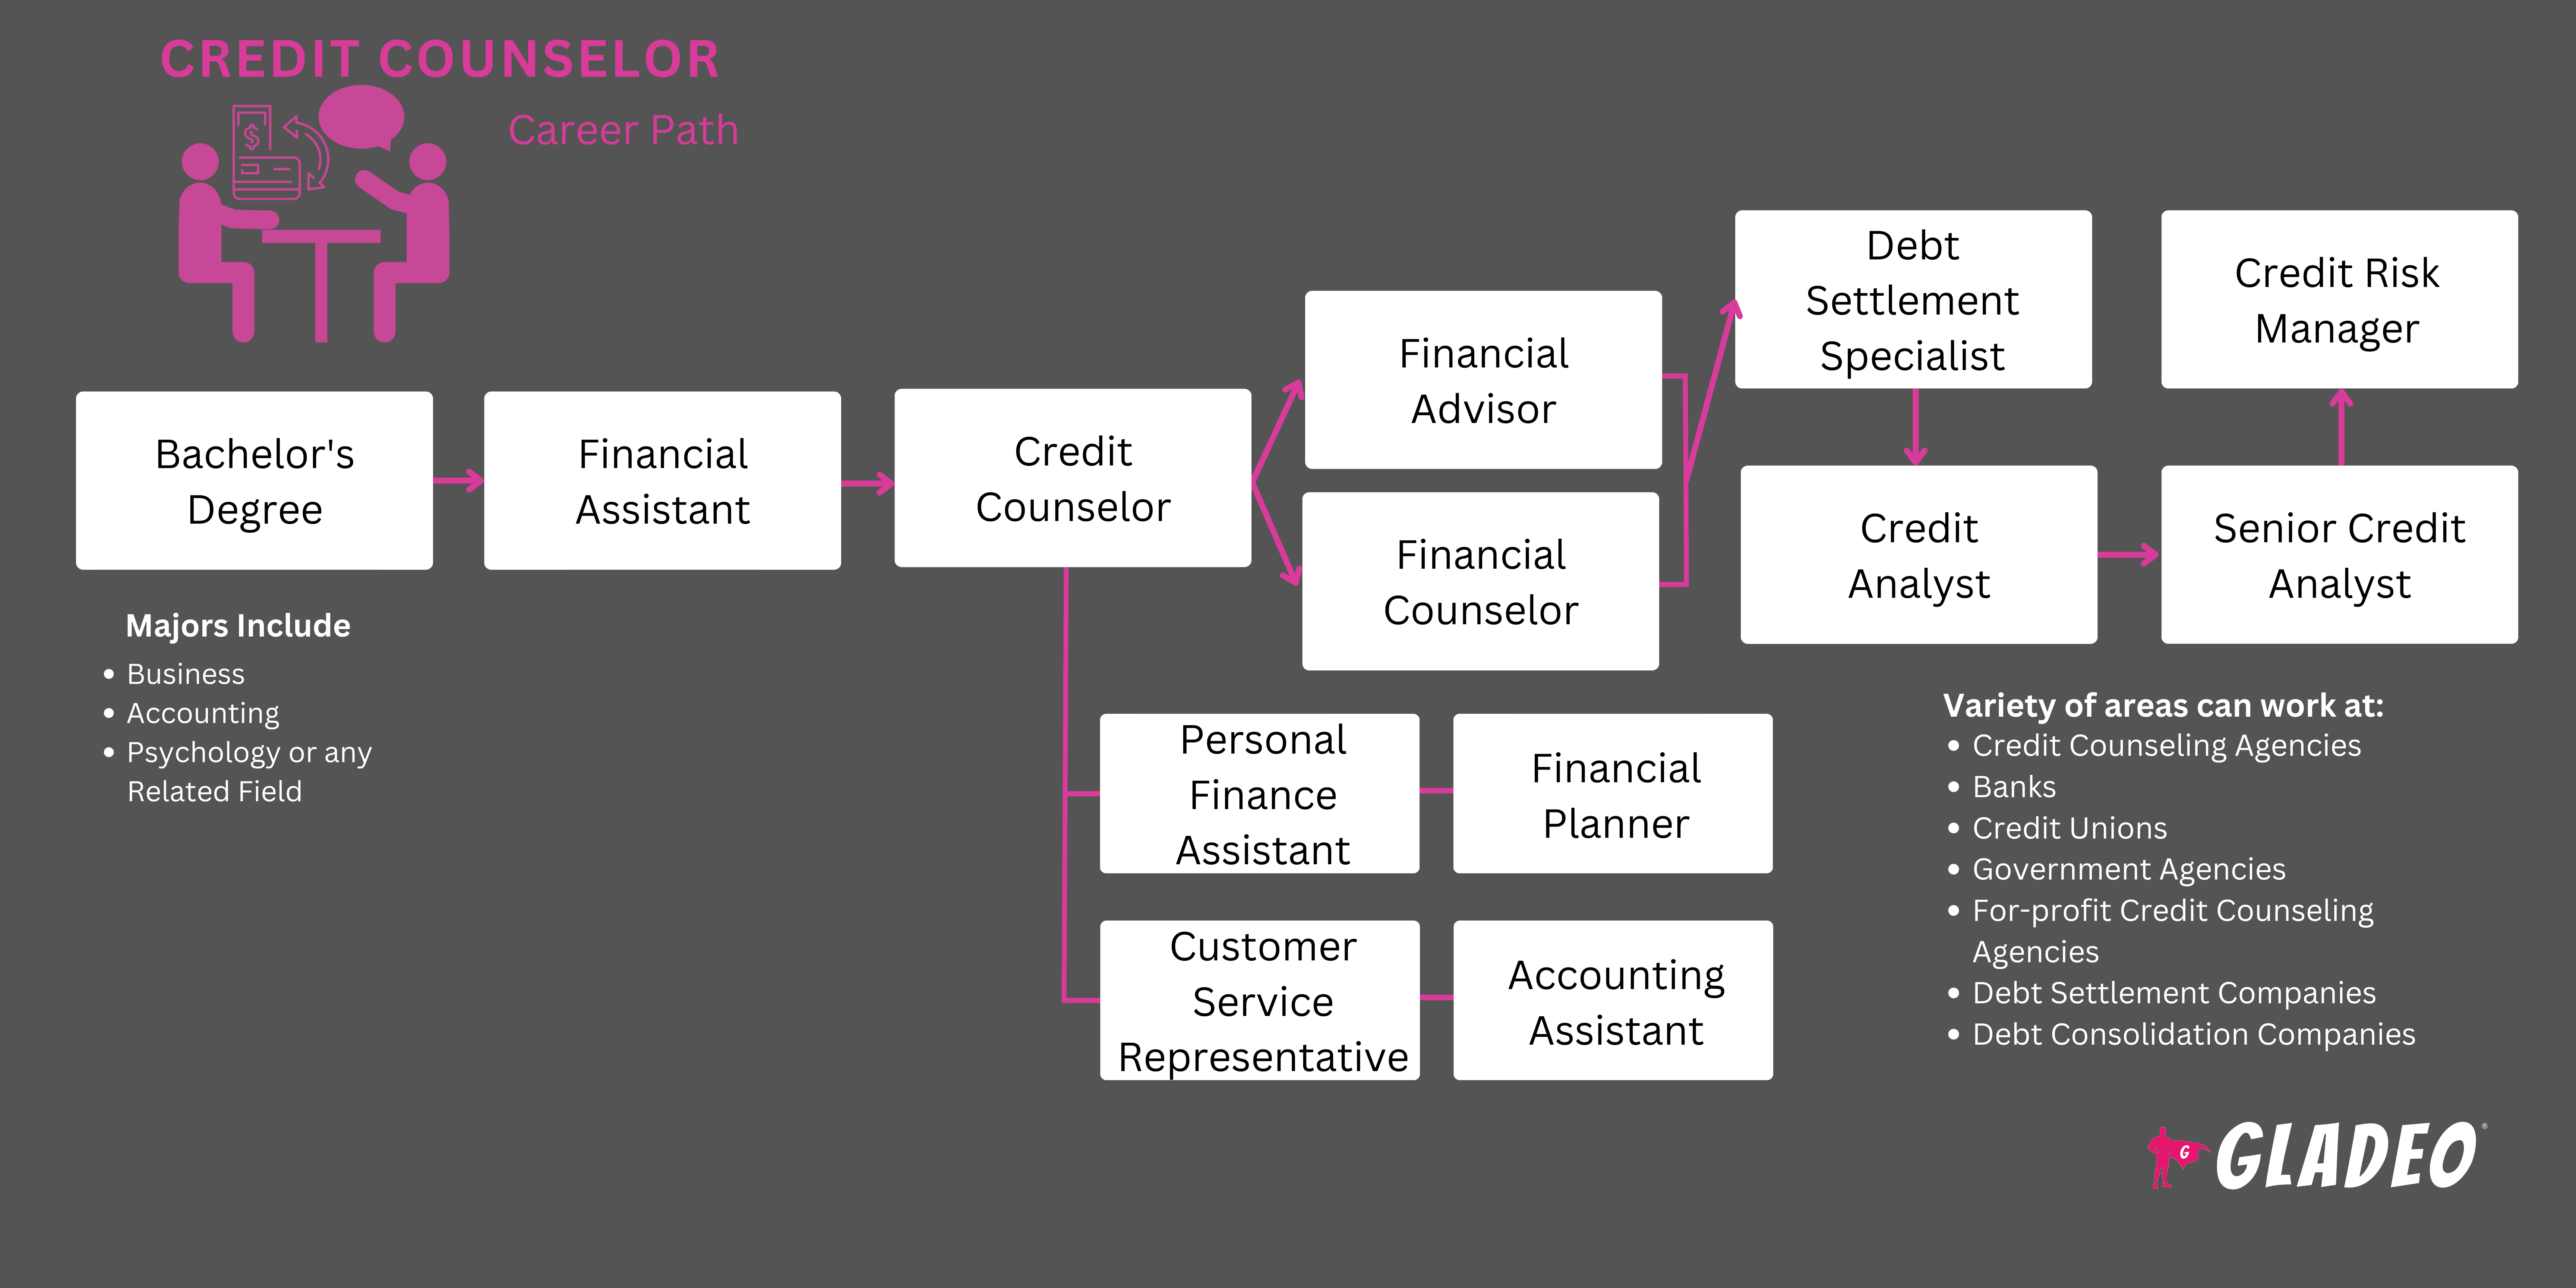 Roadmap ng Credit Counselor